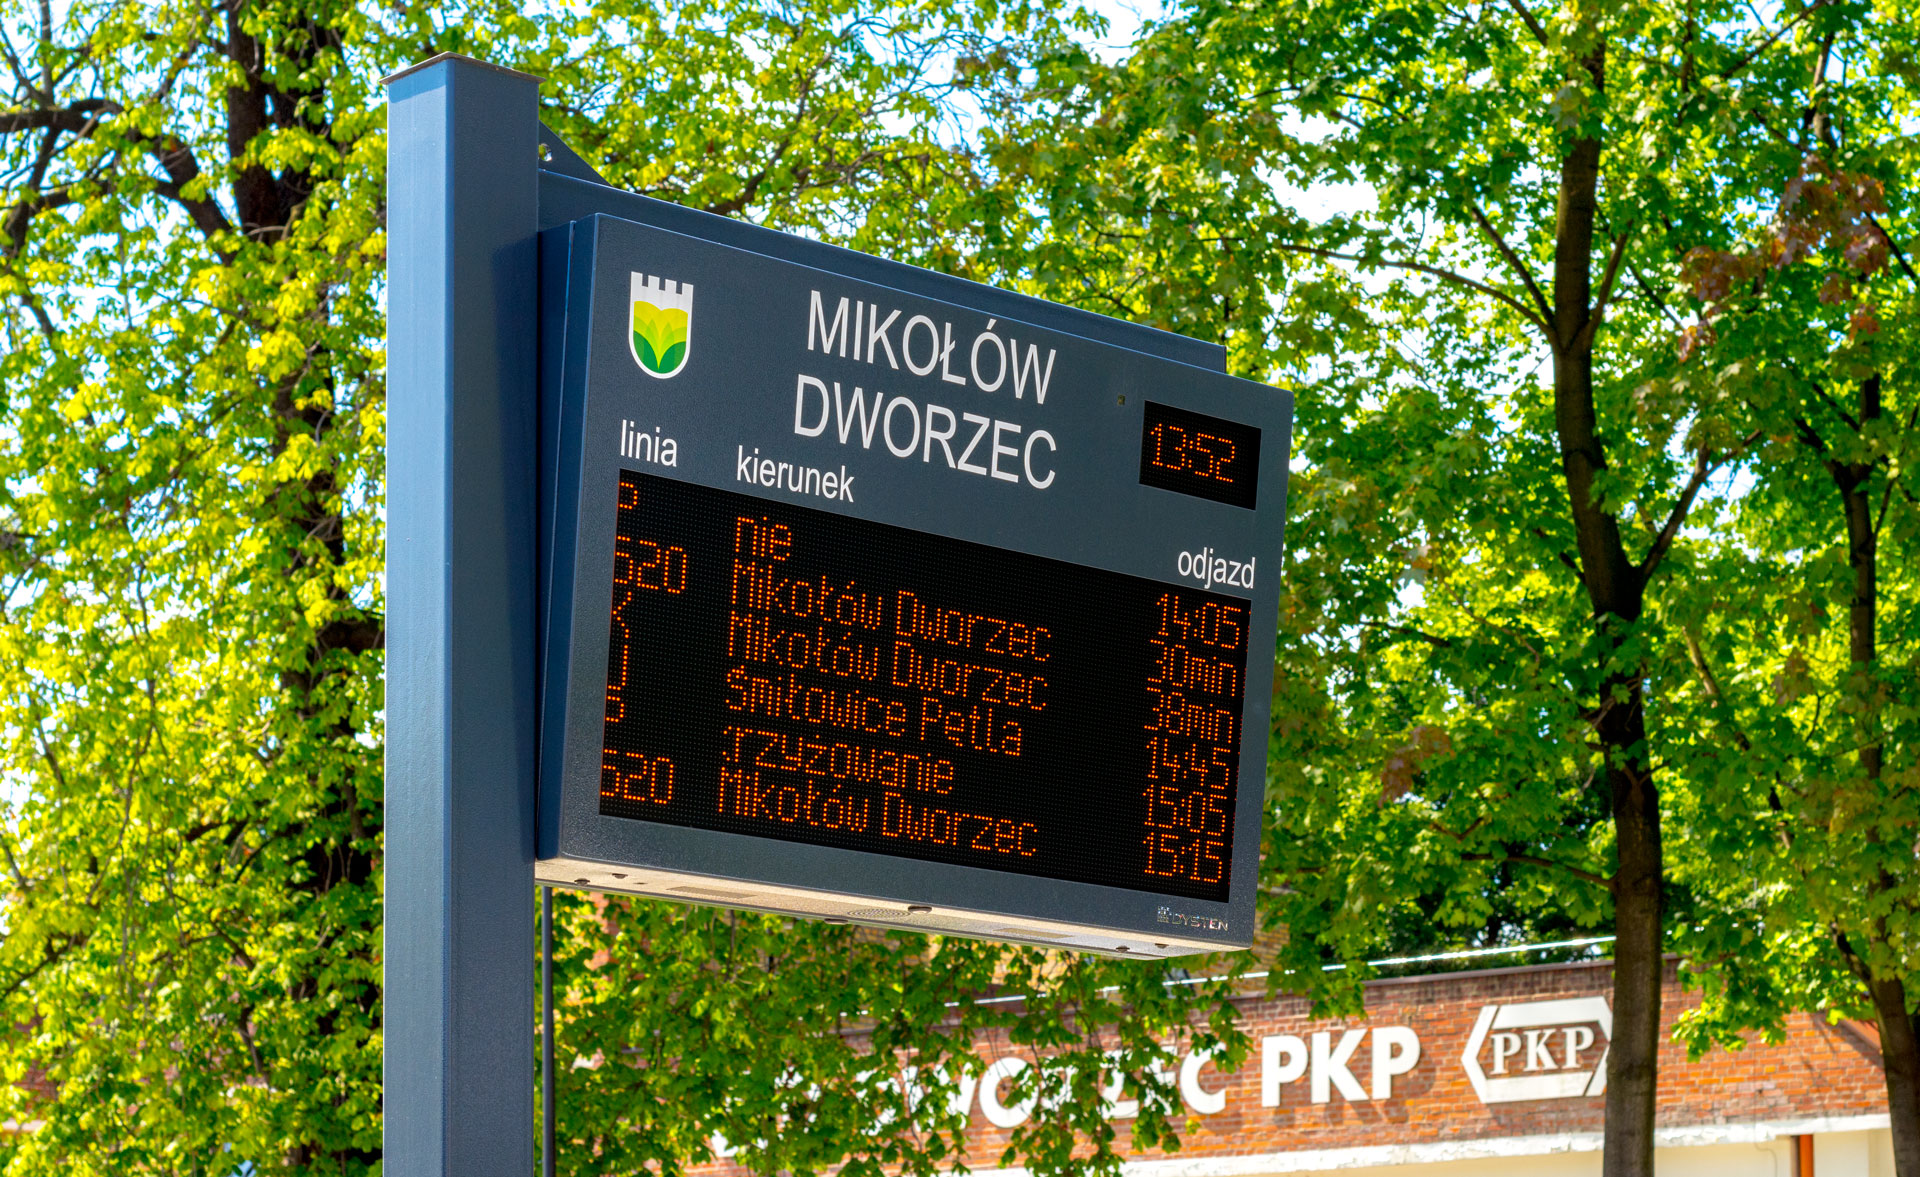 Real-time passenger information displays at interchangetablice i wyświetlacze dynamicznej informacji pasażerskiej w centrum przesiadkowym w Mikołowie